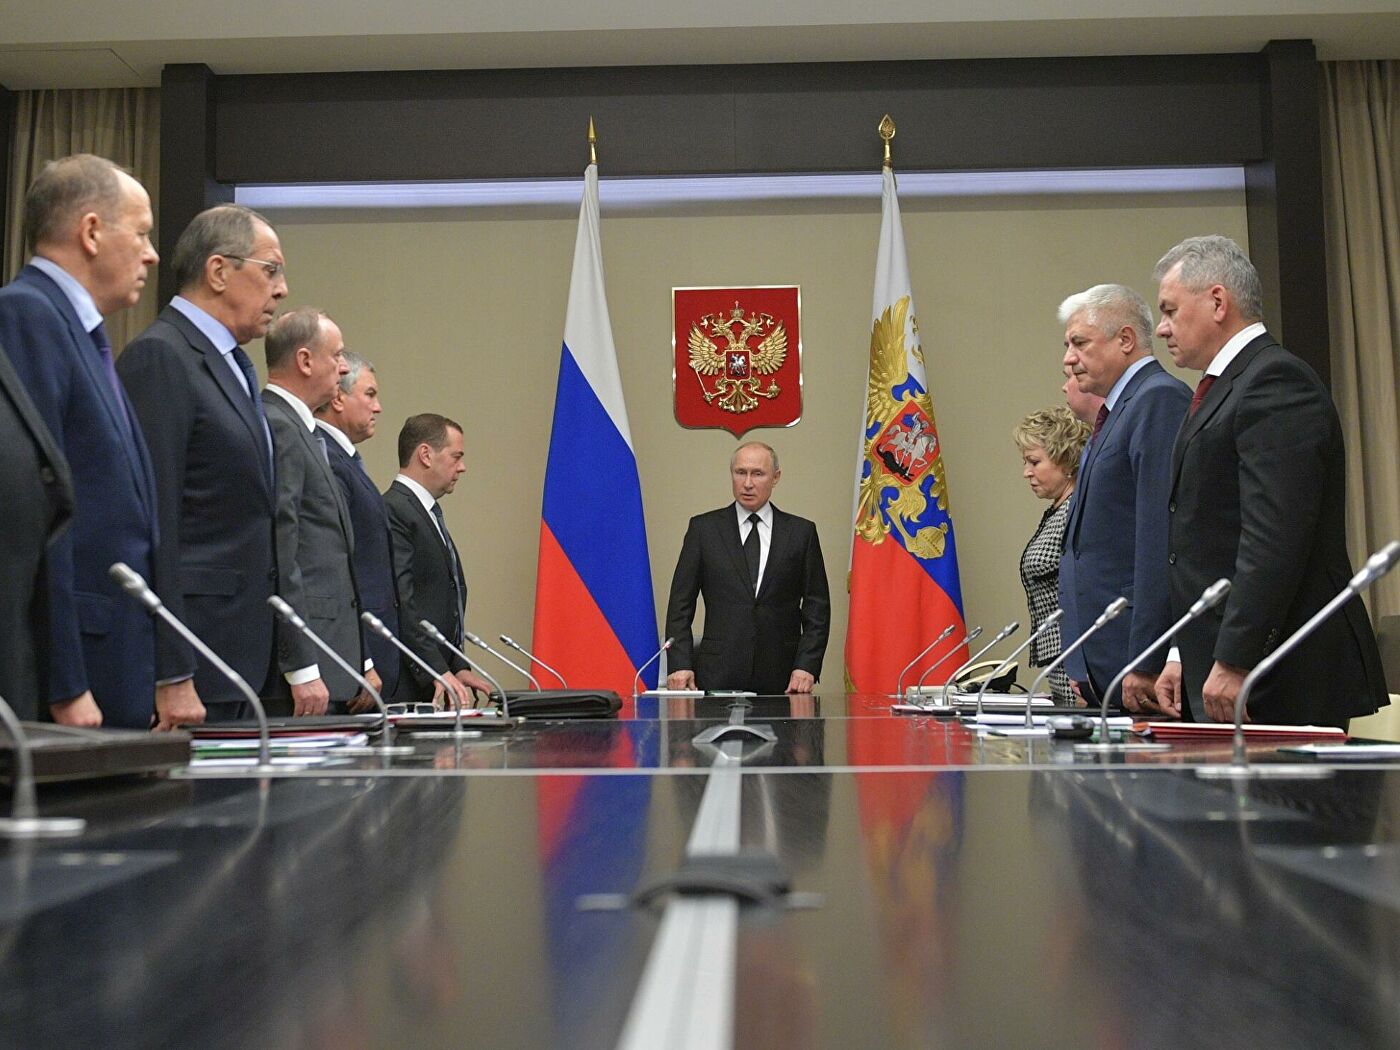 Каспаров: Путинский режим ответственен практически за все конфликтные точки в мире сегодня